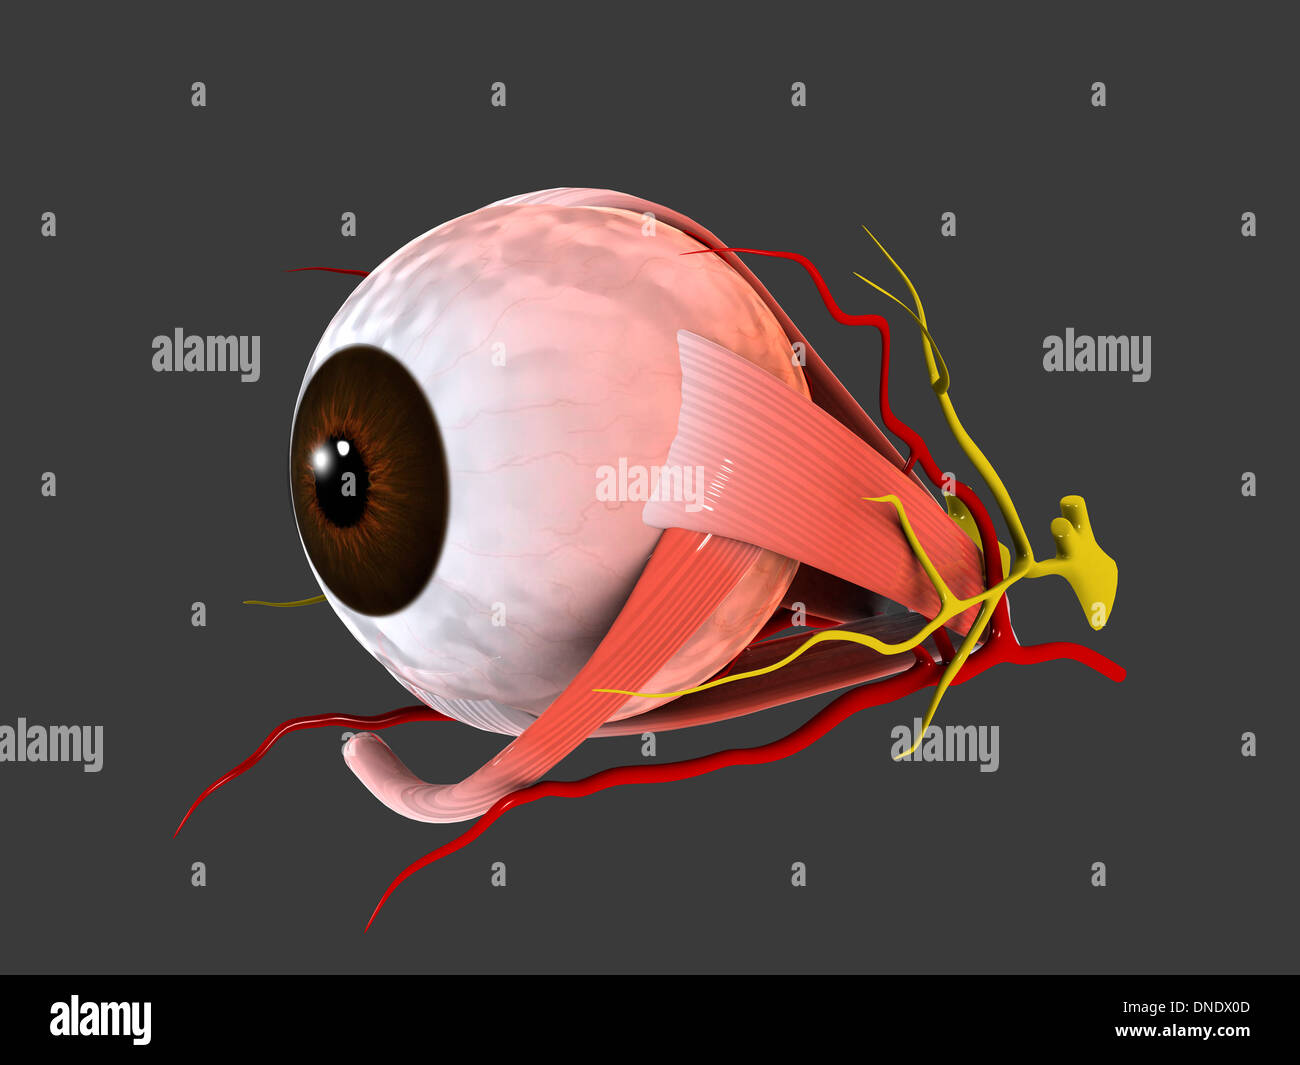 Conceptual image of human eye anatomy. Stock Photo